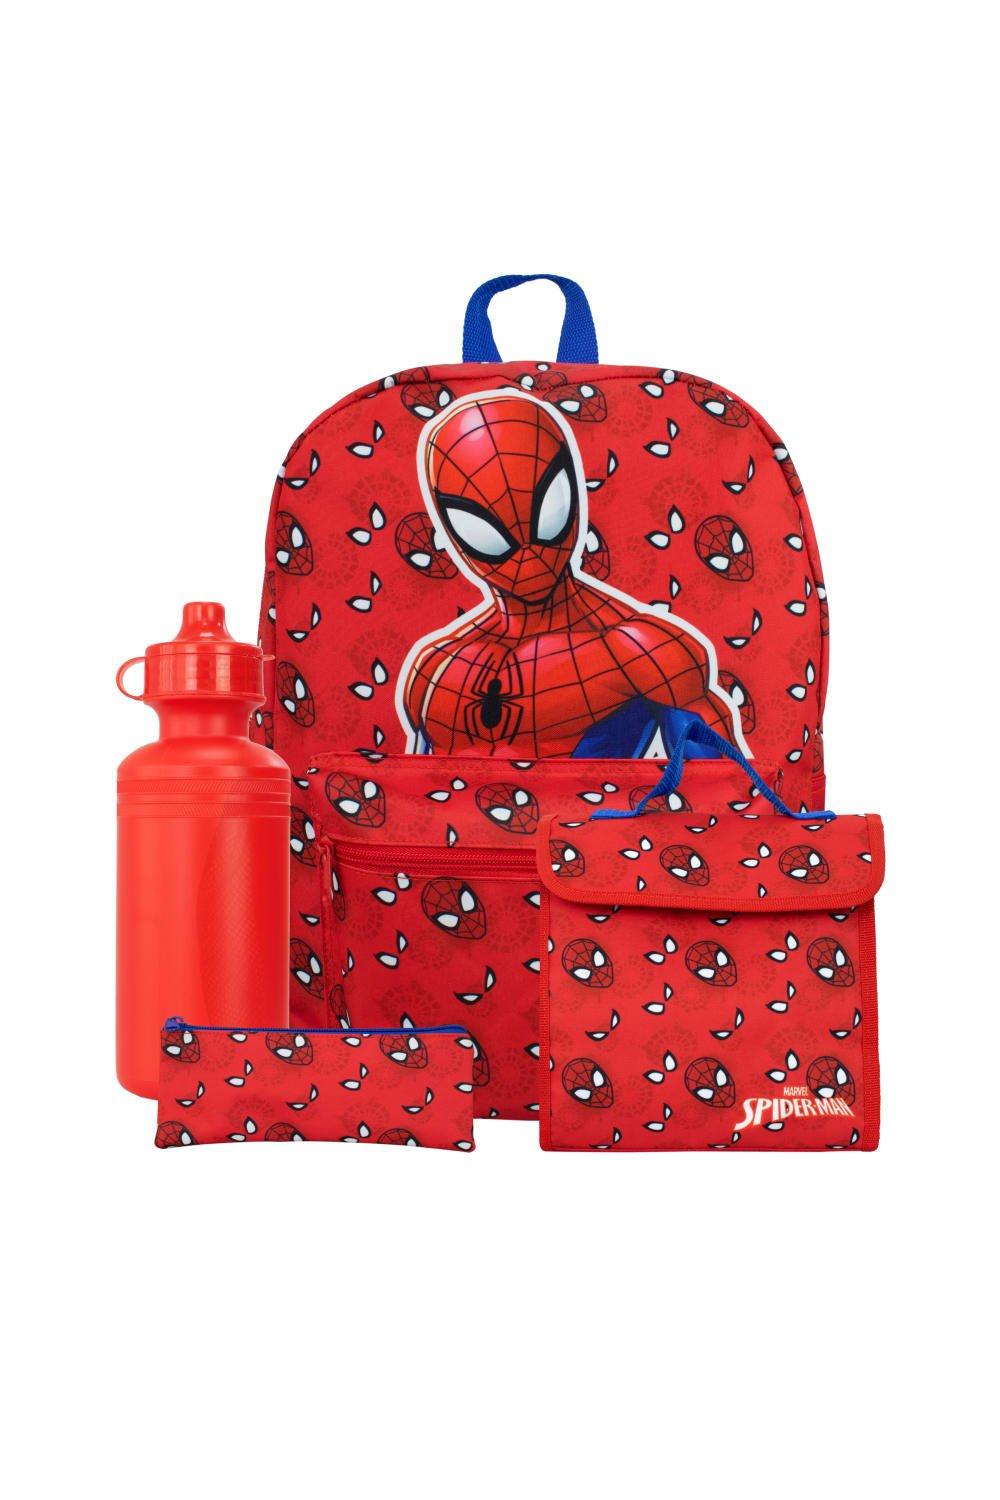 Набор рюкзаков из 4 предметов «Человек-паук» Marvel, красный детский вместительный рюкзак с рисунком русалки и лазера цветной школьный ранец для девочек женская школьная сумка